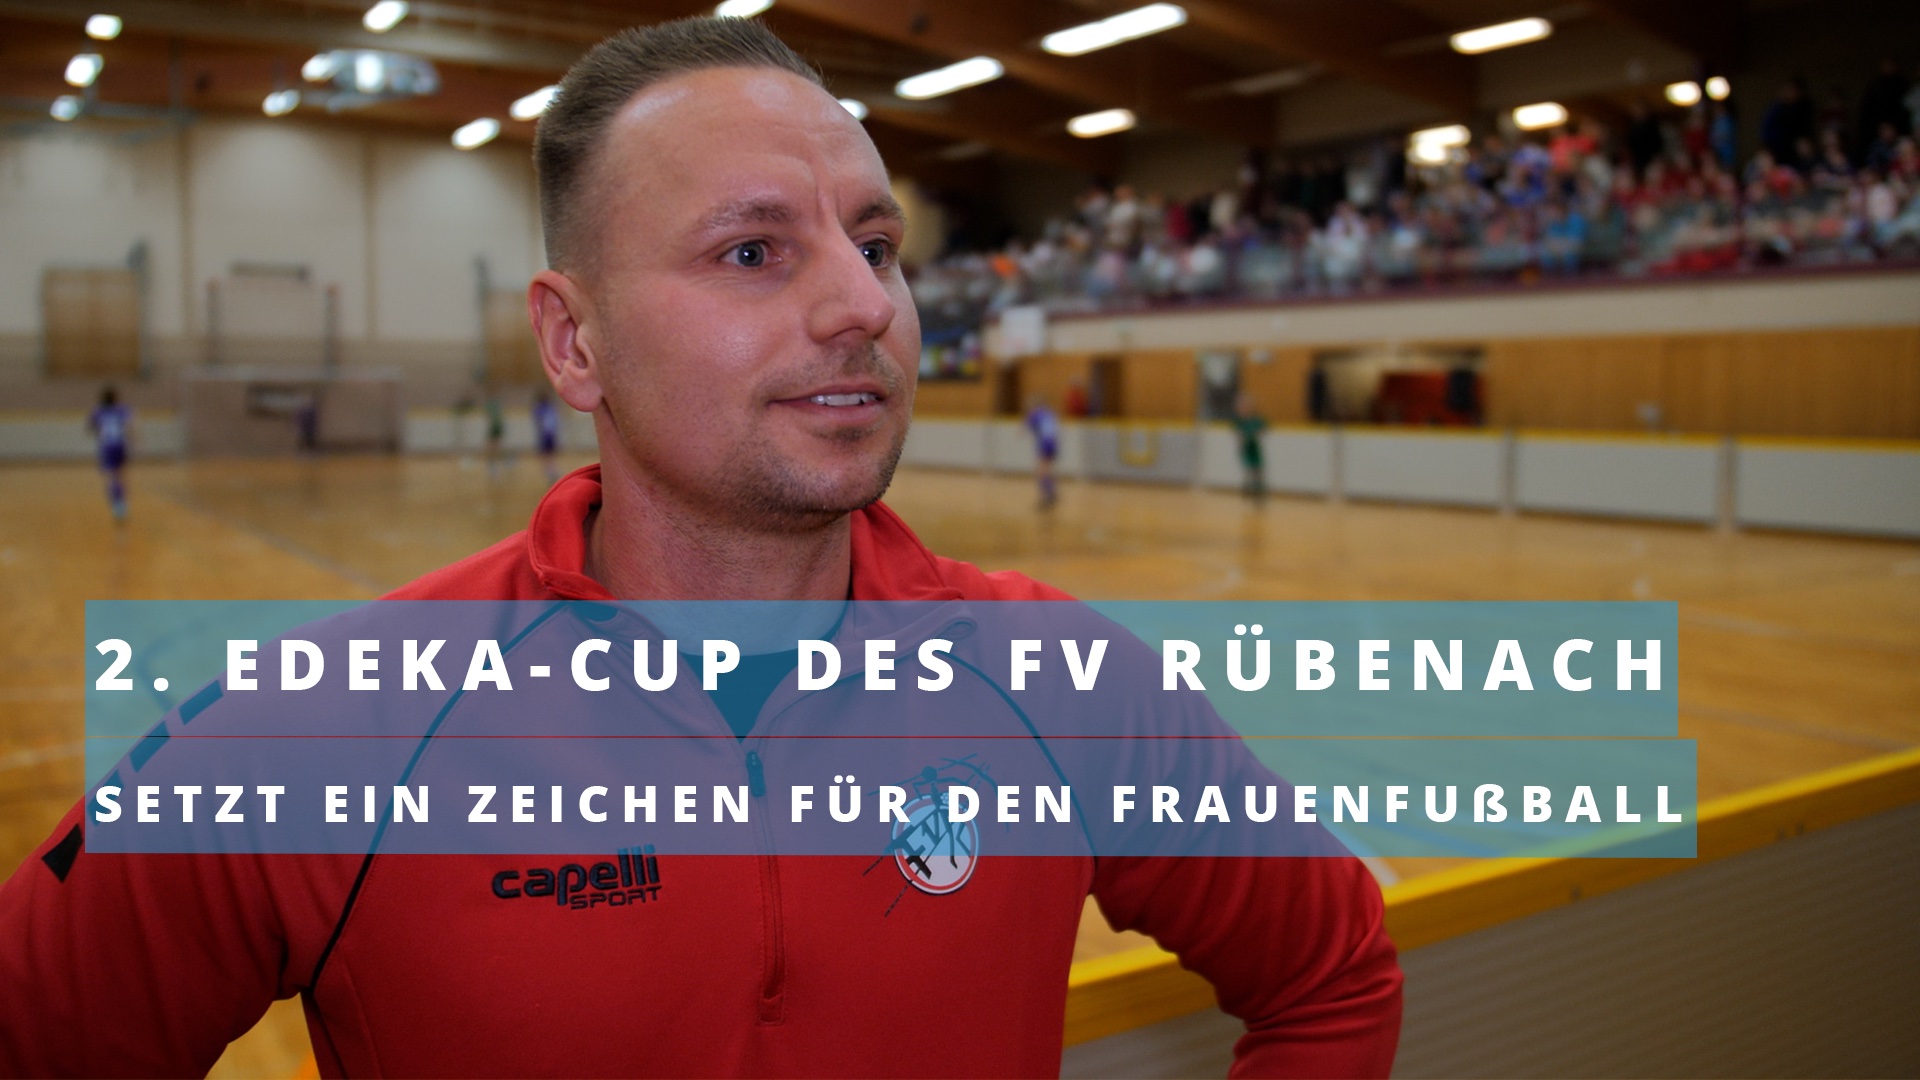 2. Edeka-Cup des FV Rübenach setzt ein Zeichen für den Frauenfußball